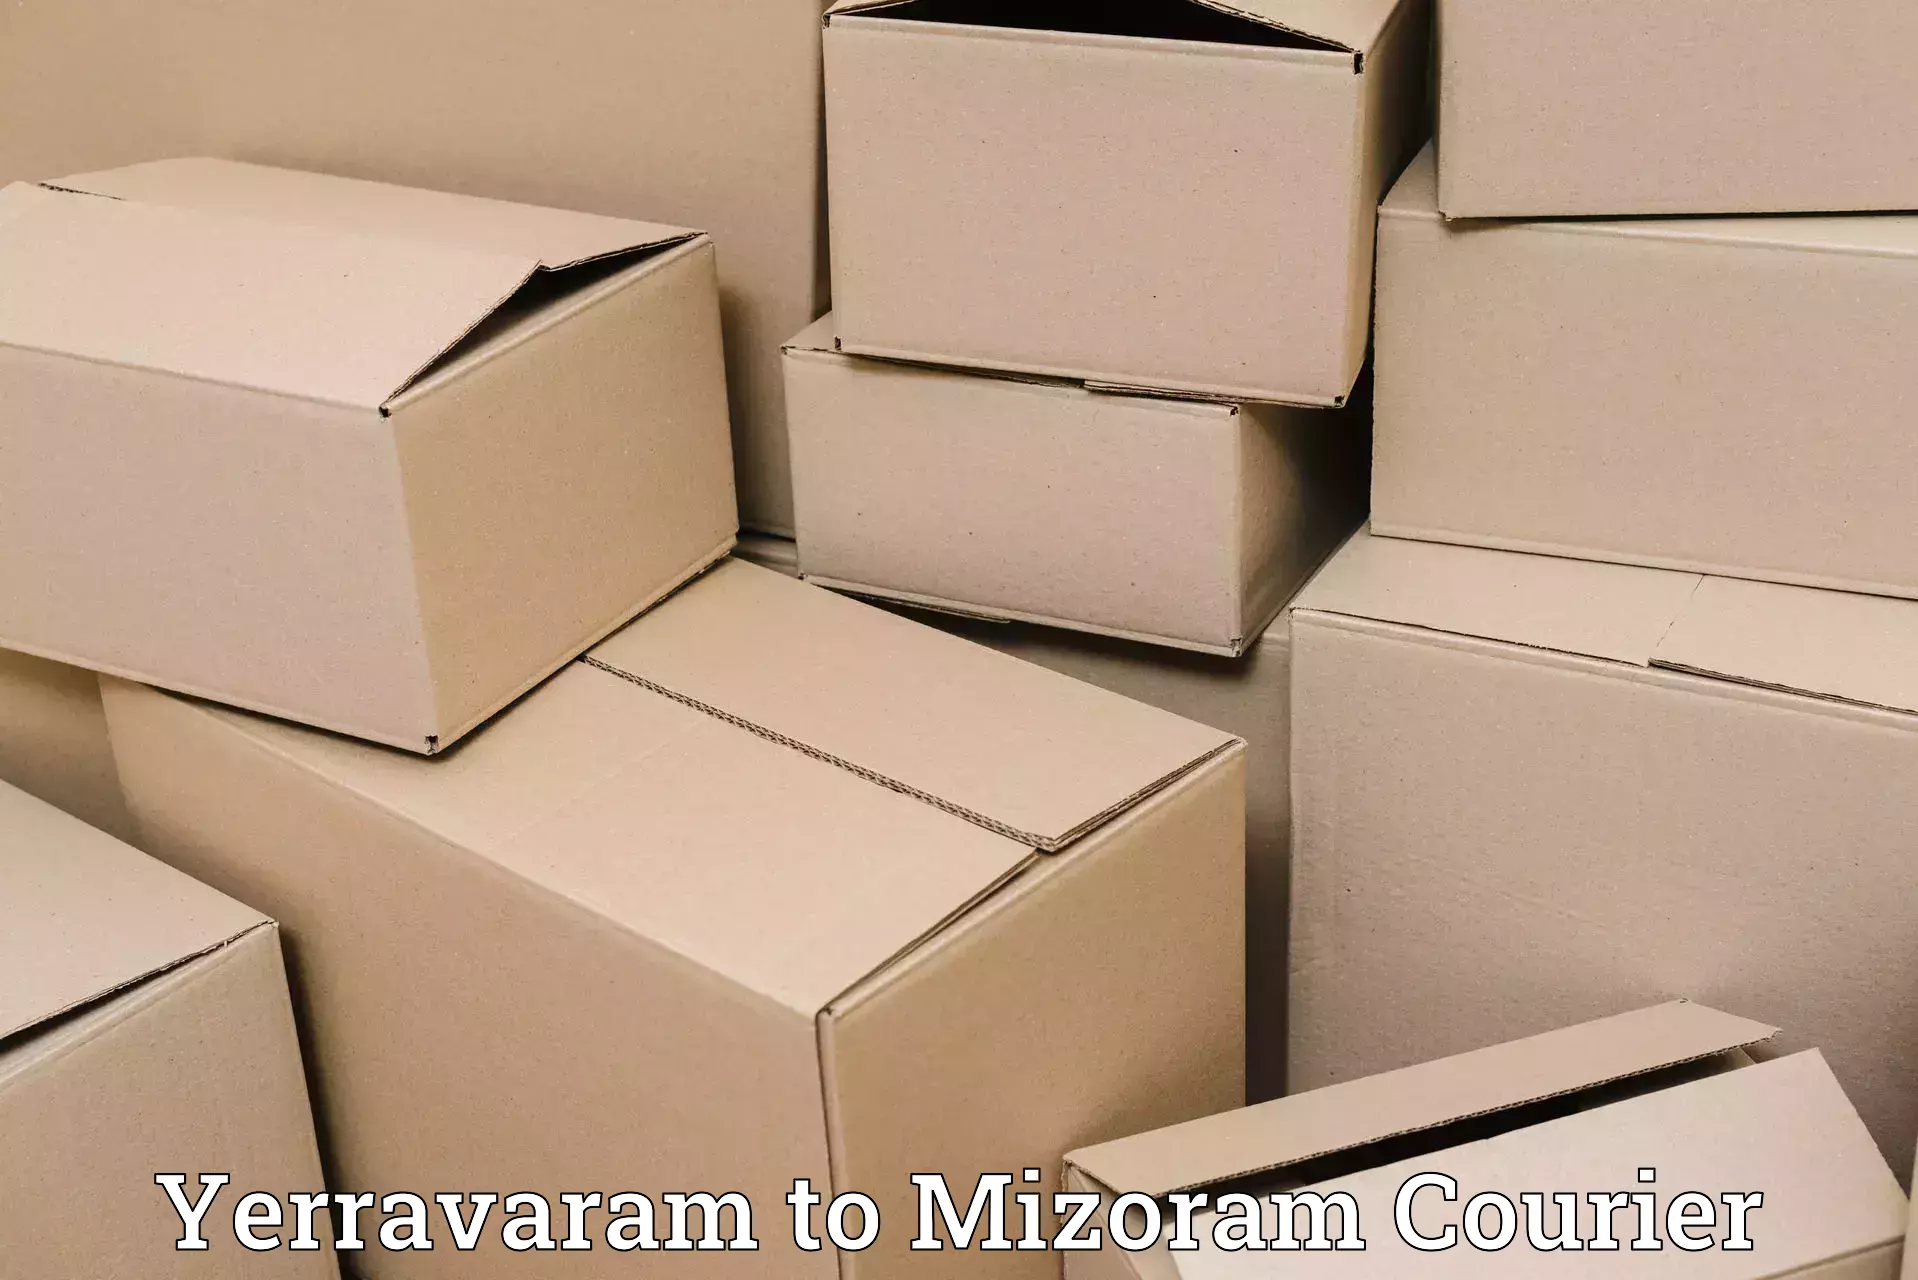 Baggage shipping schedule Yerravaram to Mizoram